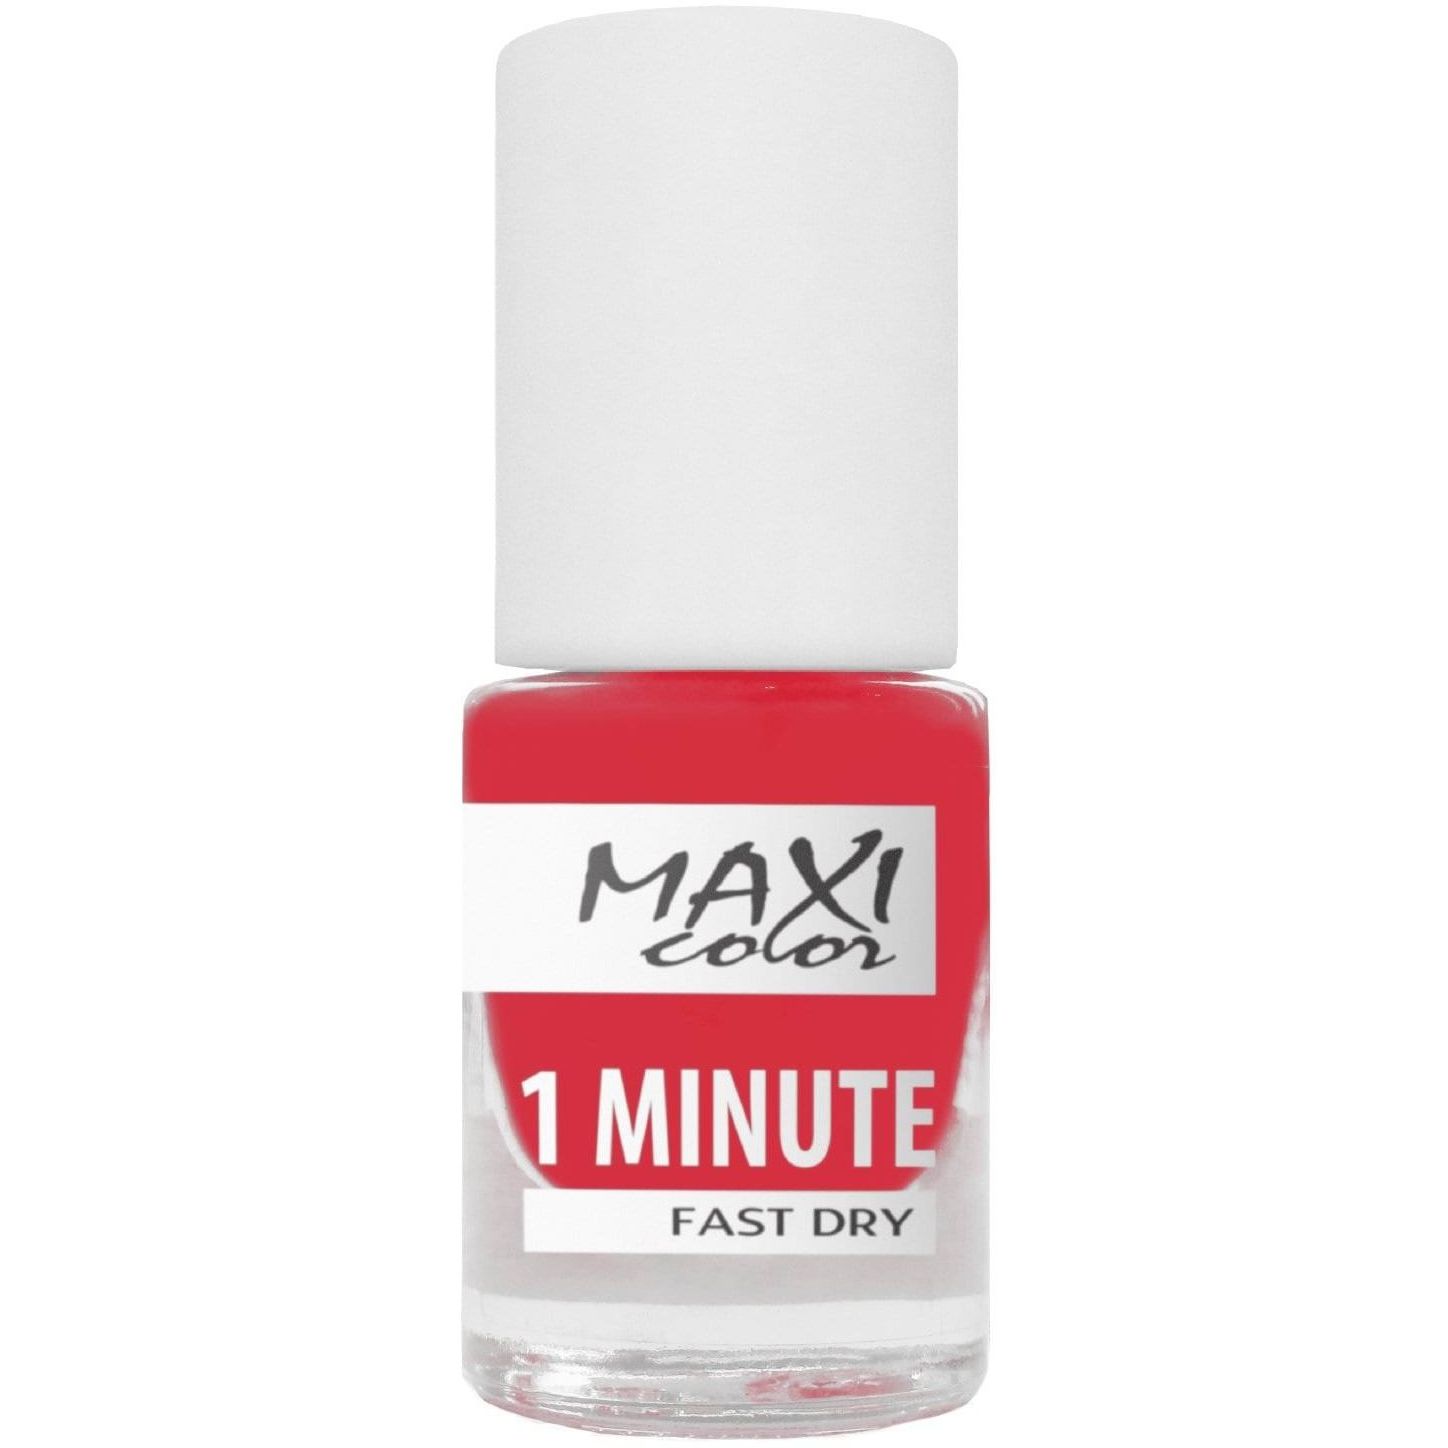 Лак для ногтей Maxi Color 1 Minute Fast Dry тон 036, 6 мл - фото 1